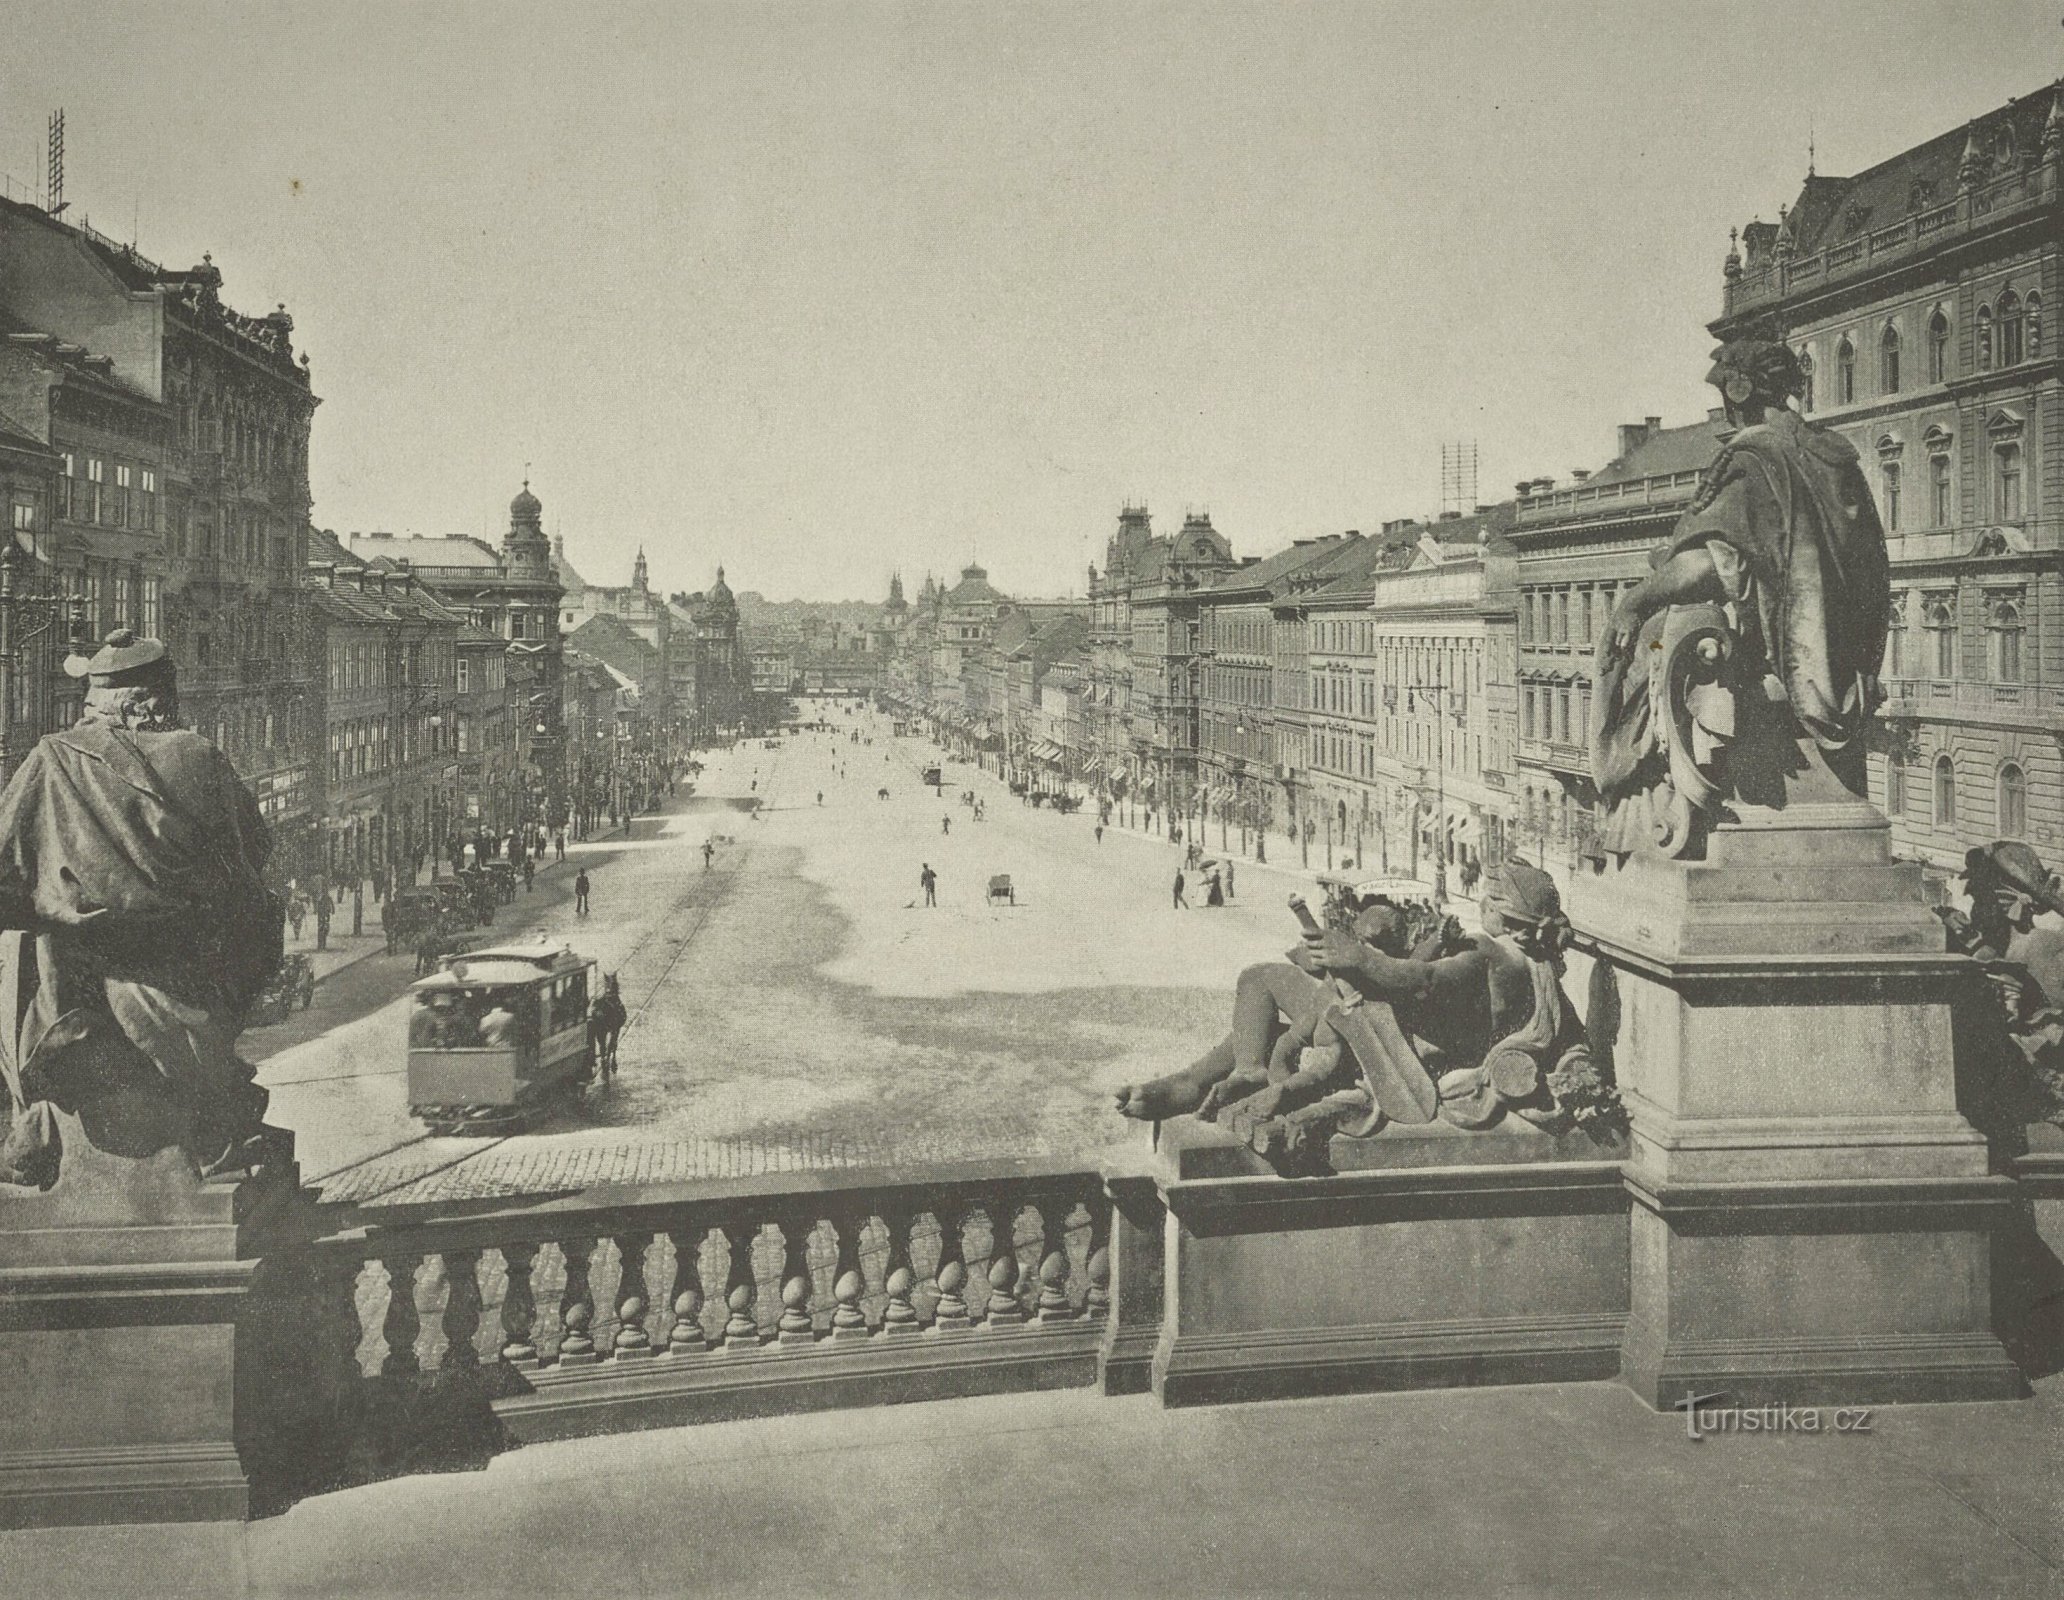 Vista da Praça Venceslau de Praga do Museu Nacional (provavelmente 1897-1898)